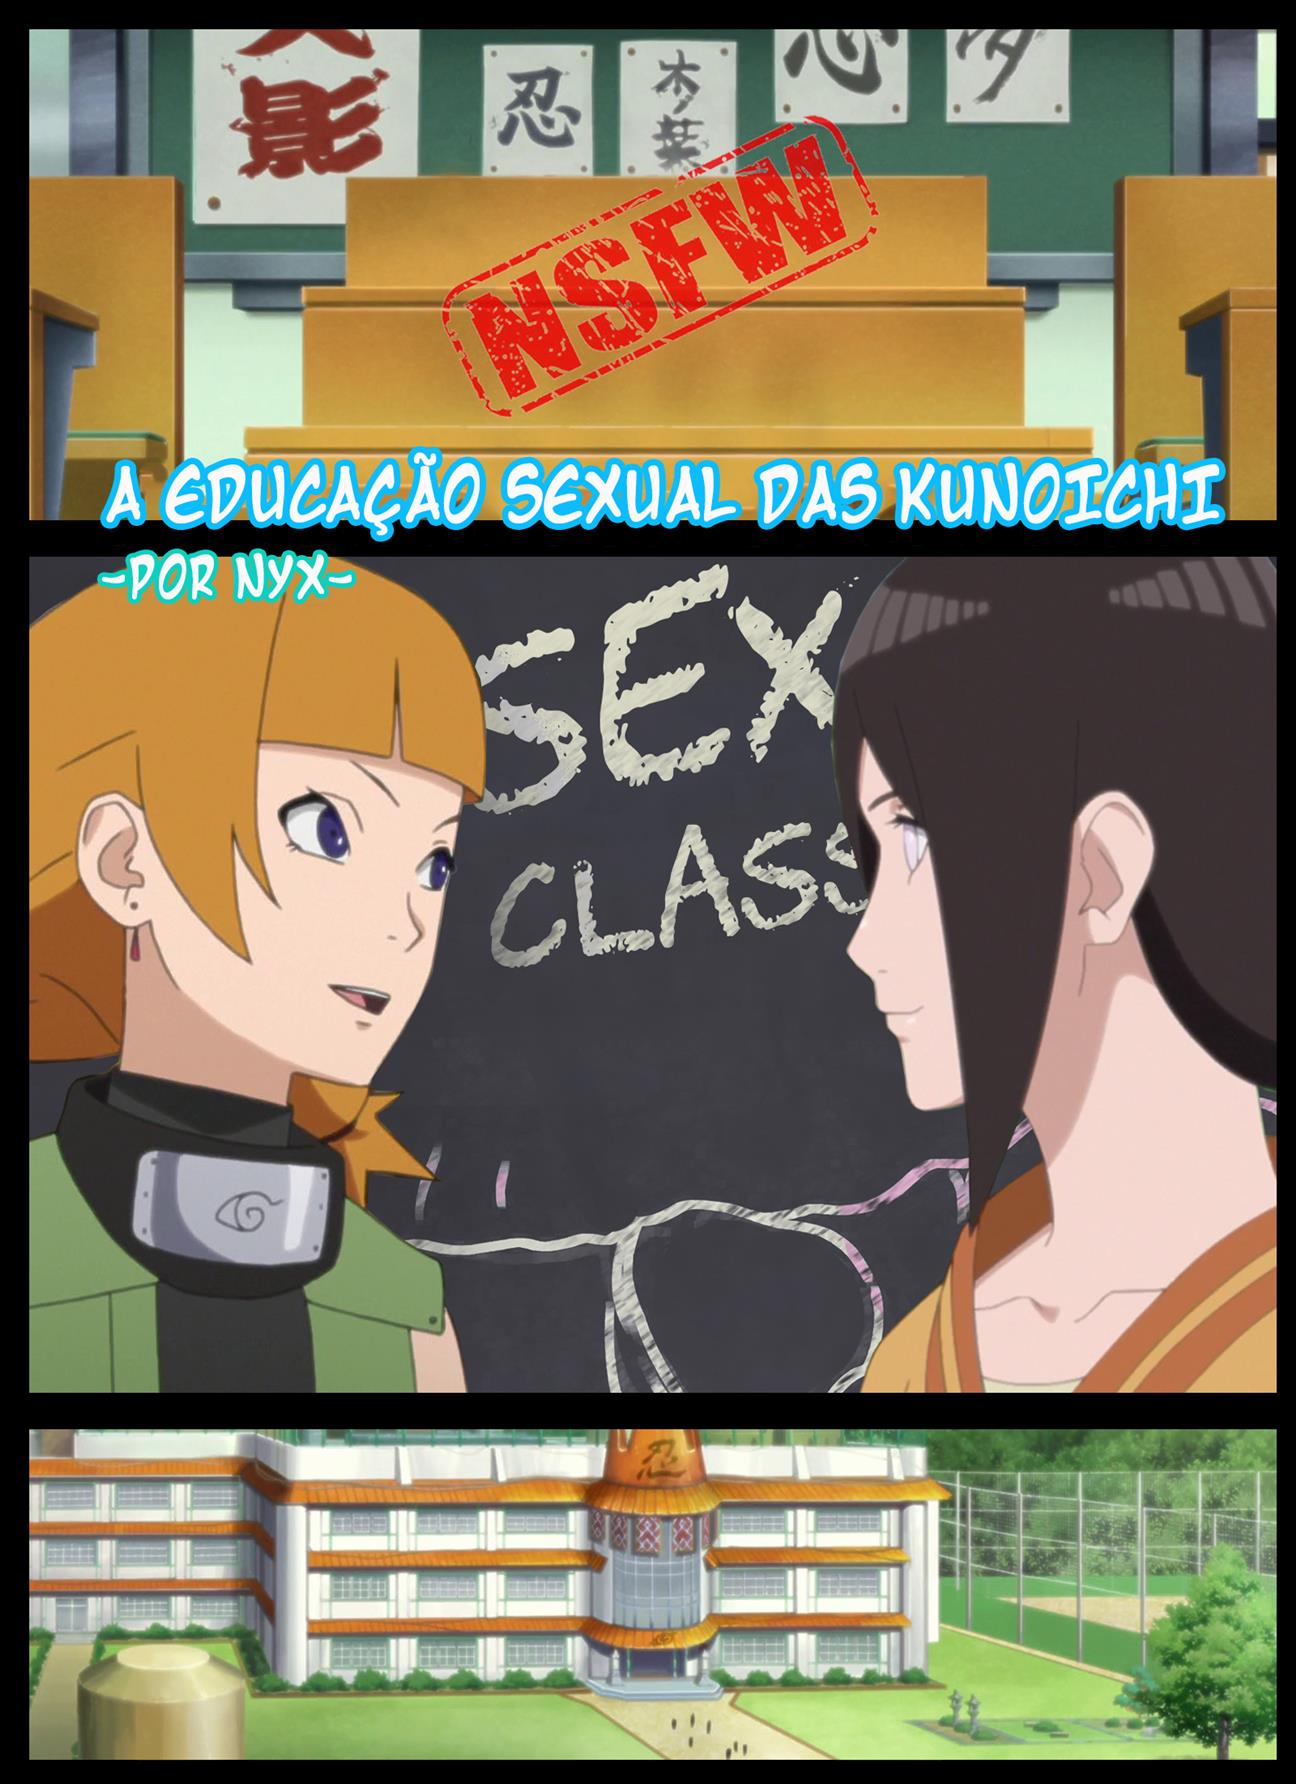 Educação Sexual das Kunoichis - Foto 1